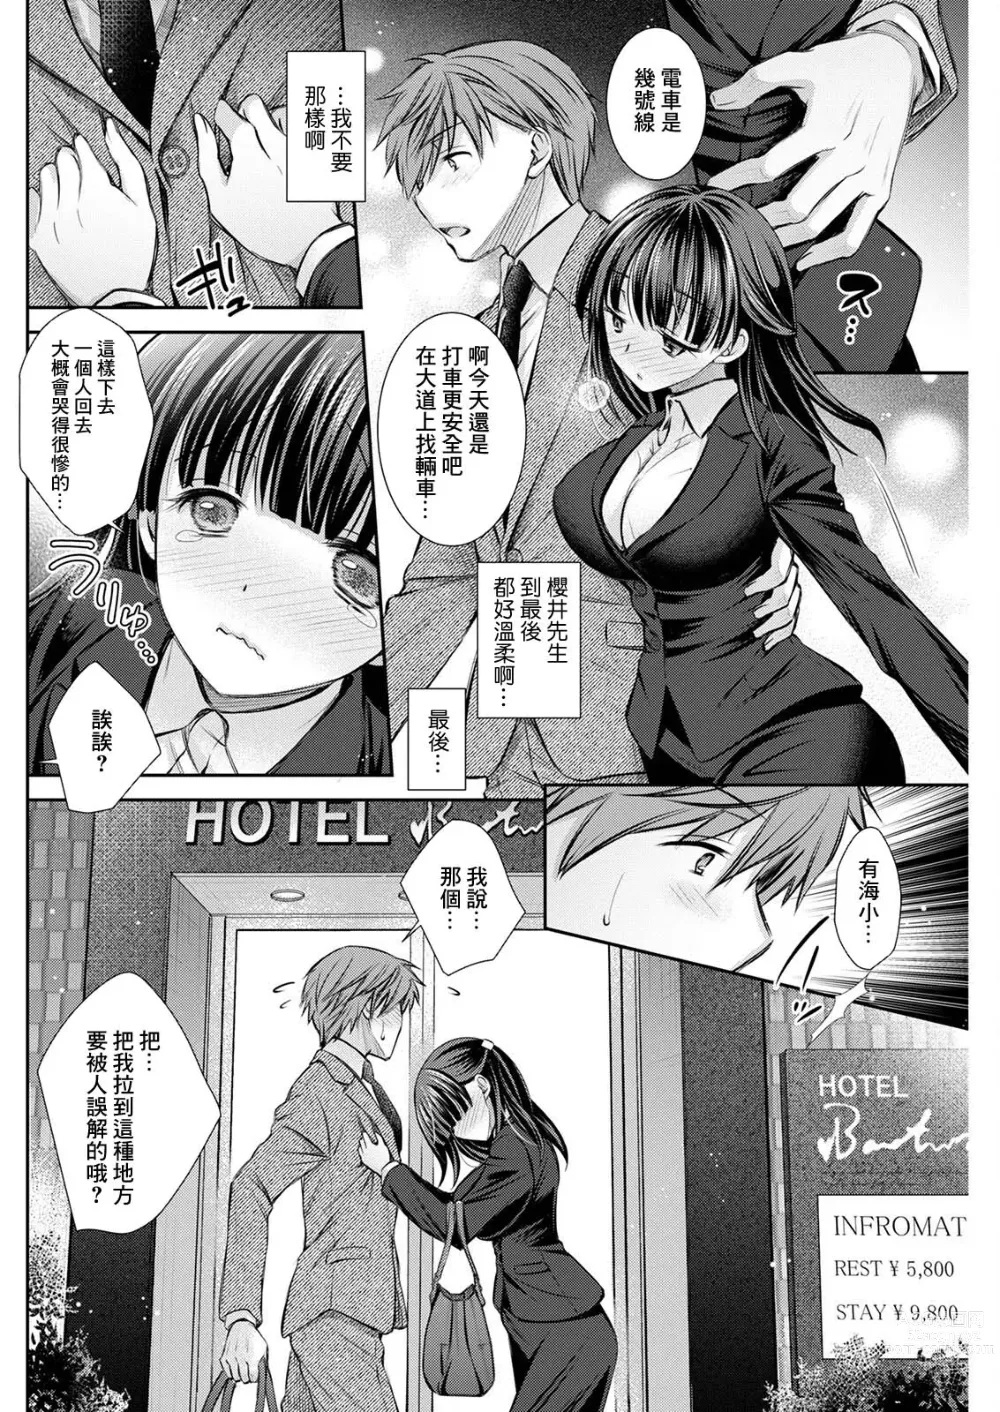 Page 4 of manga Wazawai Tenjite